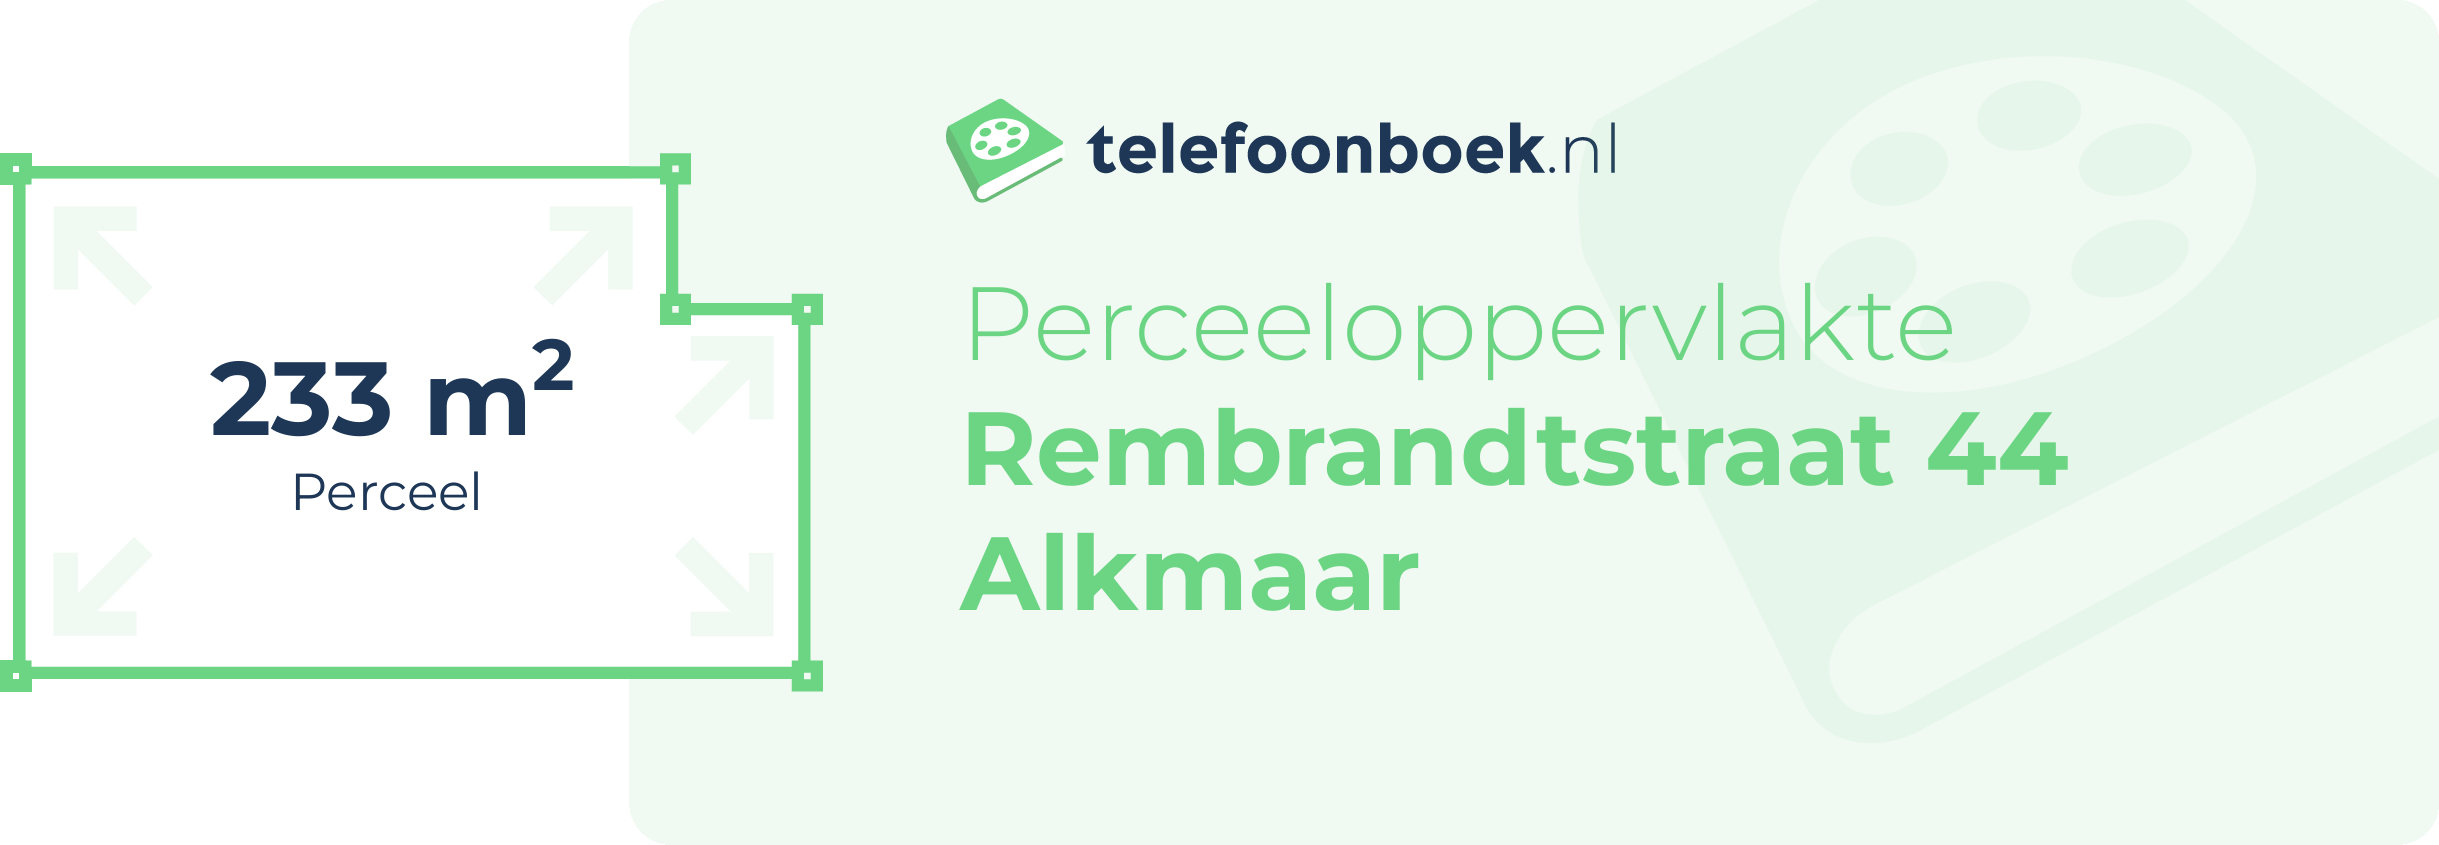 Perceeloppervlakte Rembrandtstraat 44 Alkmaar